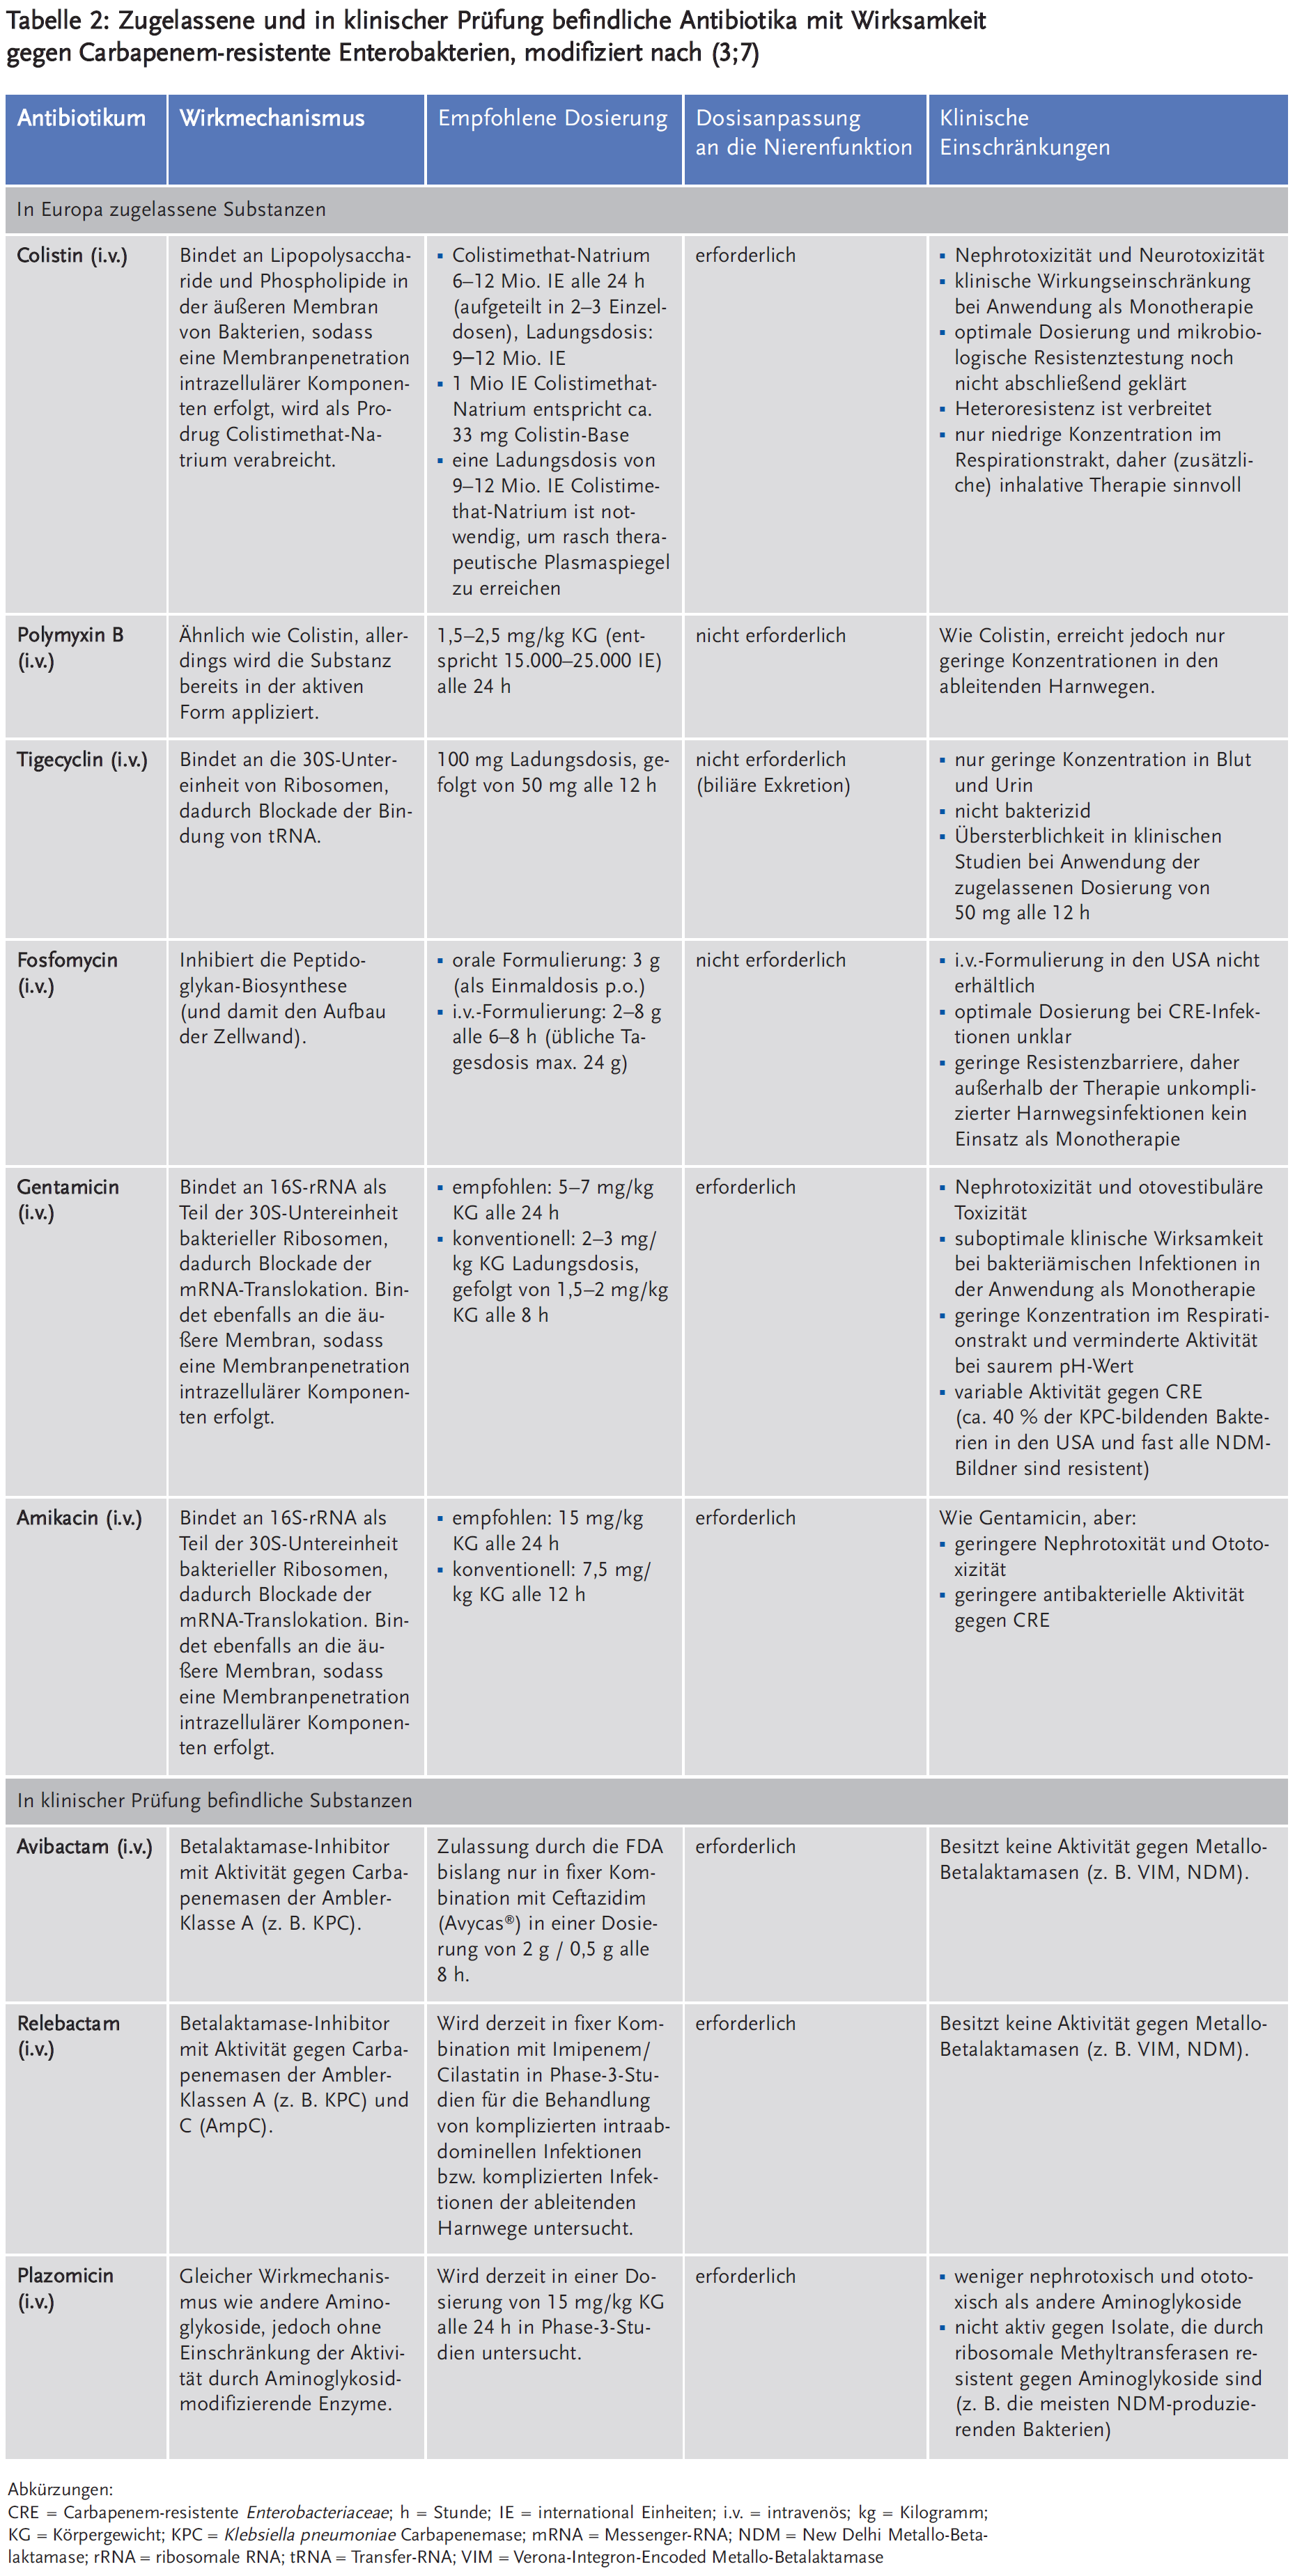 Tabelle 2: Zugelassene und in klinischer Prüfung befindliche Antibiotika mit Wirksamkeit gegen Carbapenem-resistente Enterobakterien, modifiziert nach (3;7)